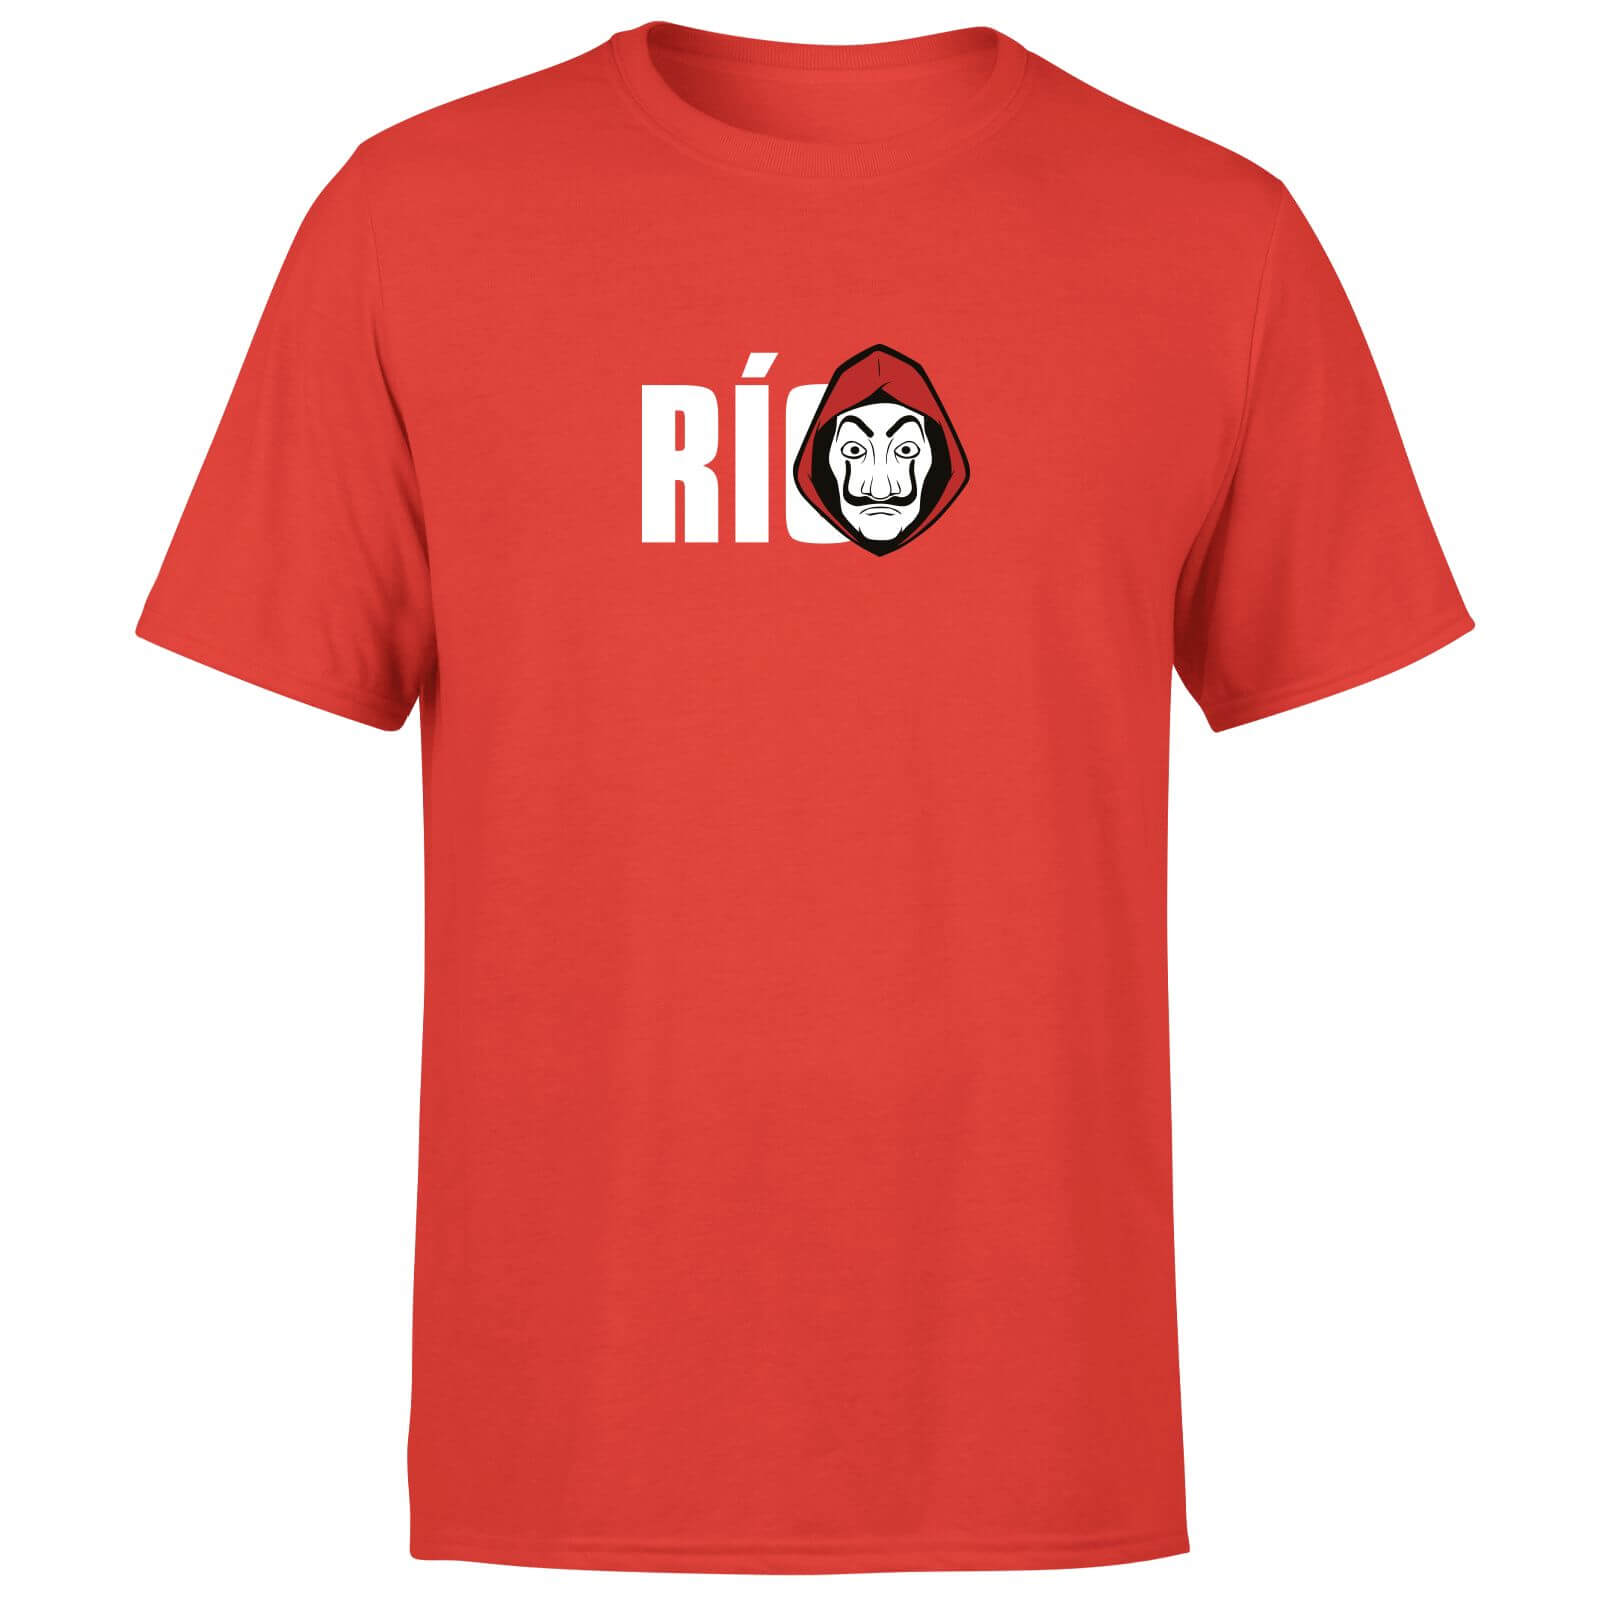 Money Heist Rio Men's T-Shirt - Red - XXL - Red